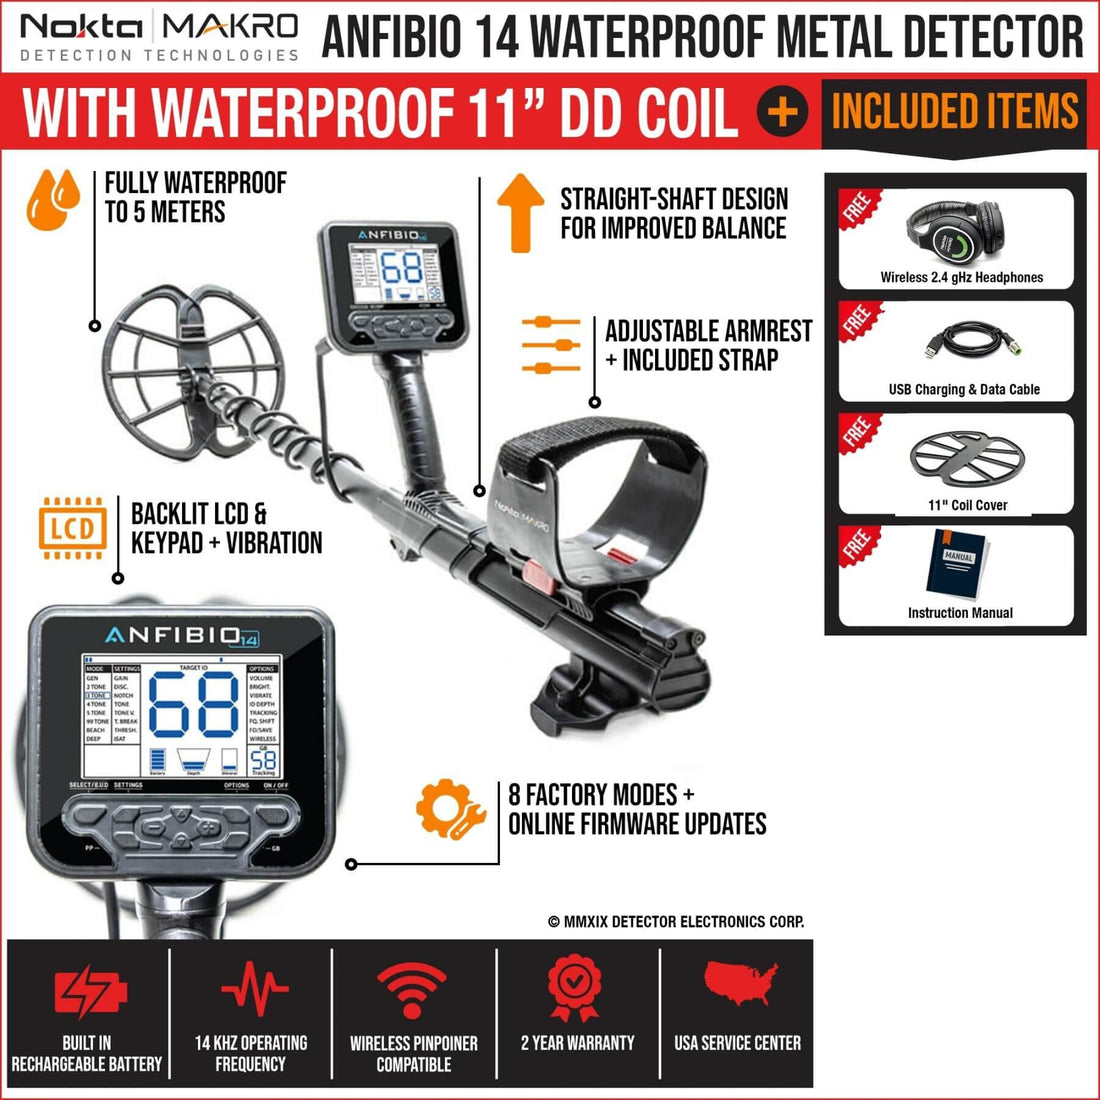 Nokta Makro Anfibio 14 Waterproof Metal Detector - See Included Items